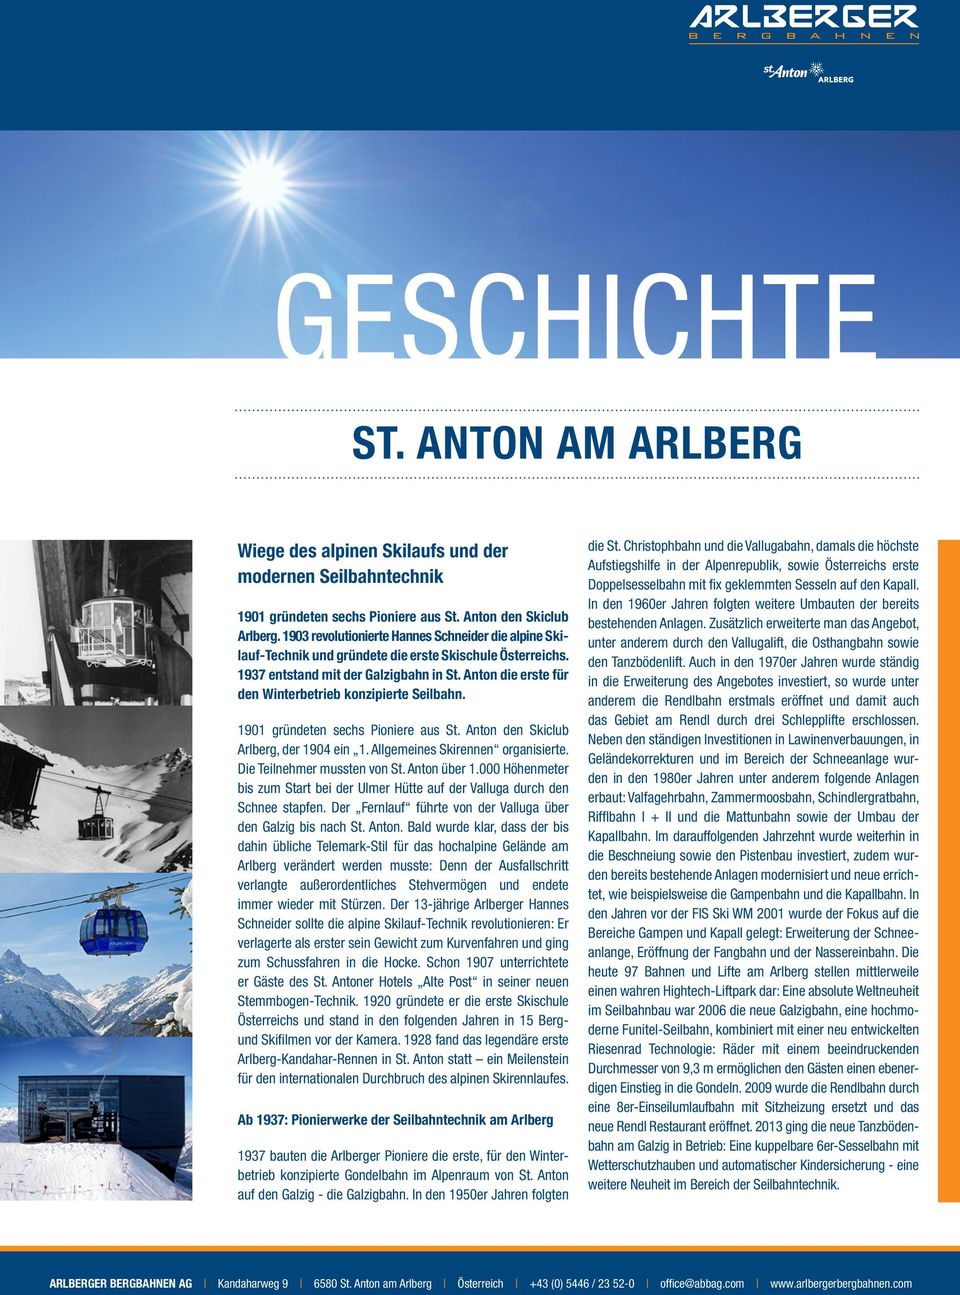 Anton die erste für den Winterbetrieb konzipierte Seilbahn. 1901 gründeten sechs Pioniere aus St. Anton den Skiclub Arlberg, der 1904 ein 1. Allgemeines Skirennen organisierte.